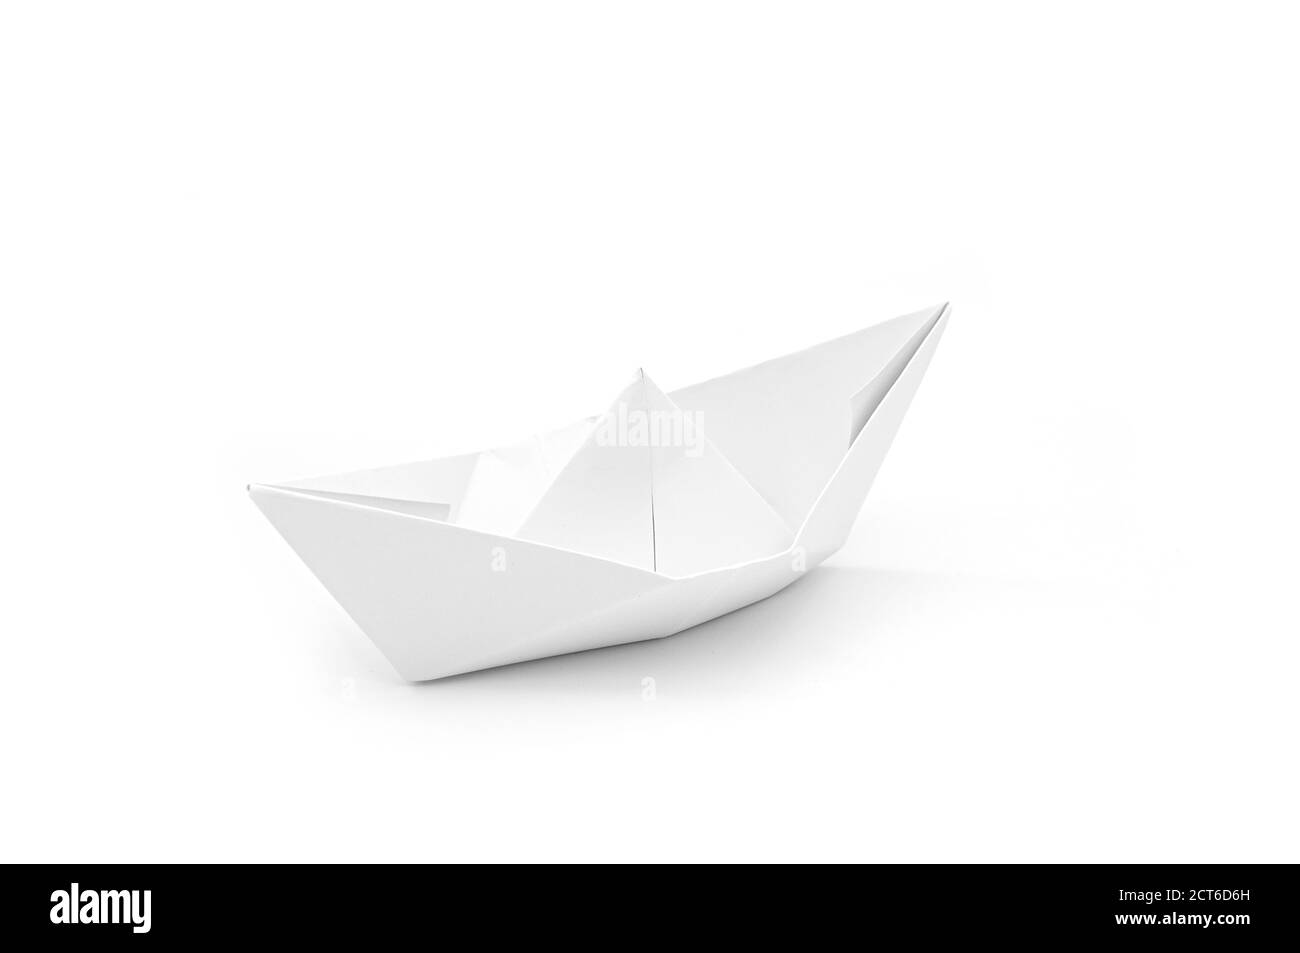 El barco de papel como origami aislado en blanco, concepto idea Foto de stock